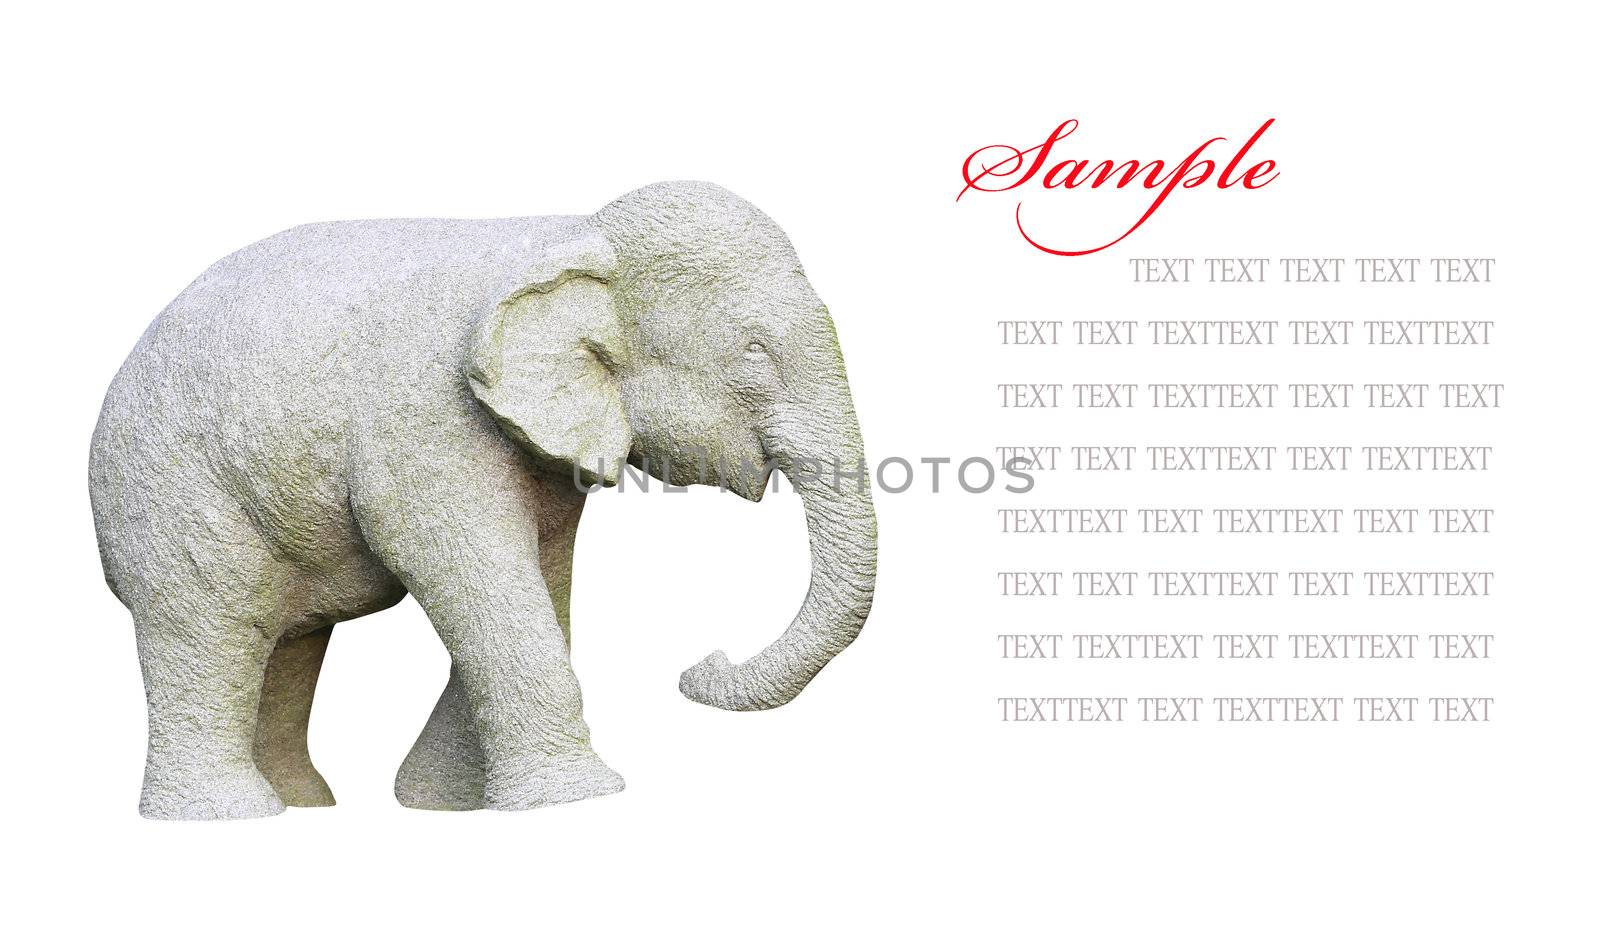 Elephant statue isolated on white